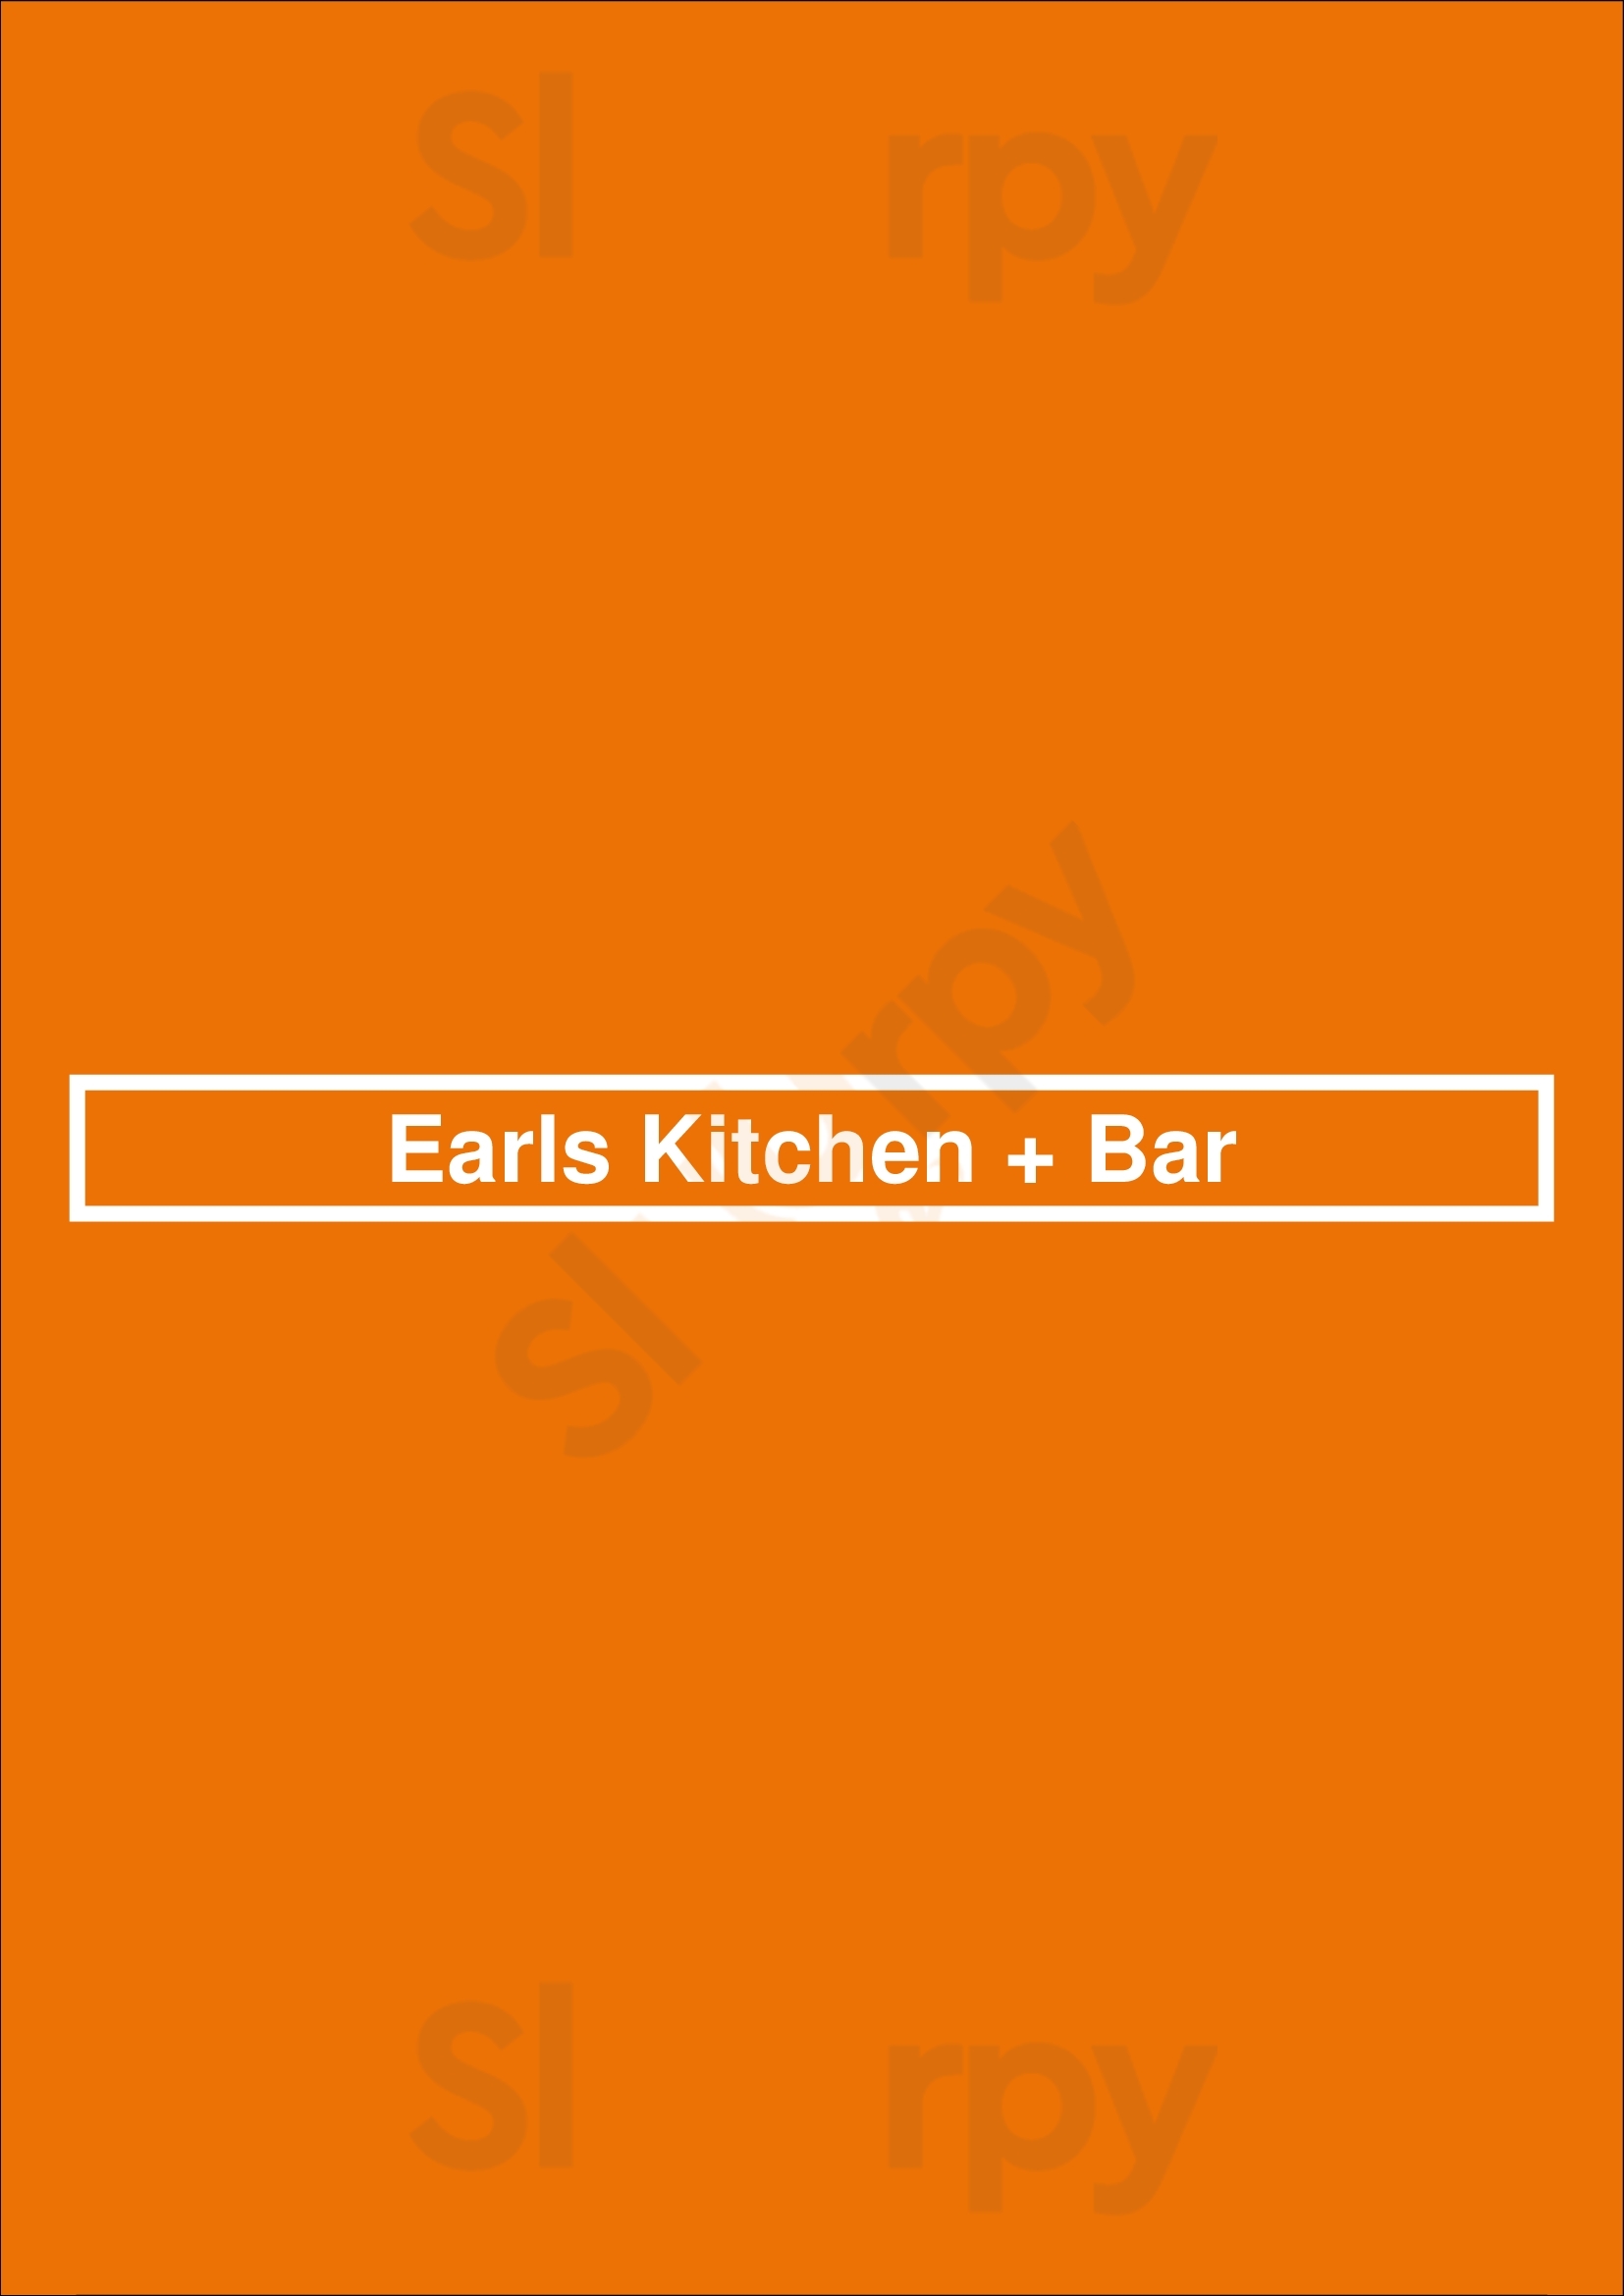 Earls Kitchen + Bar Winnipeg Menu - 1